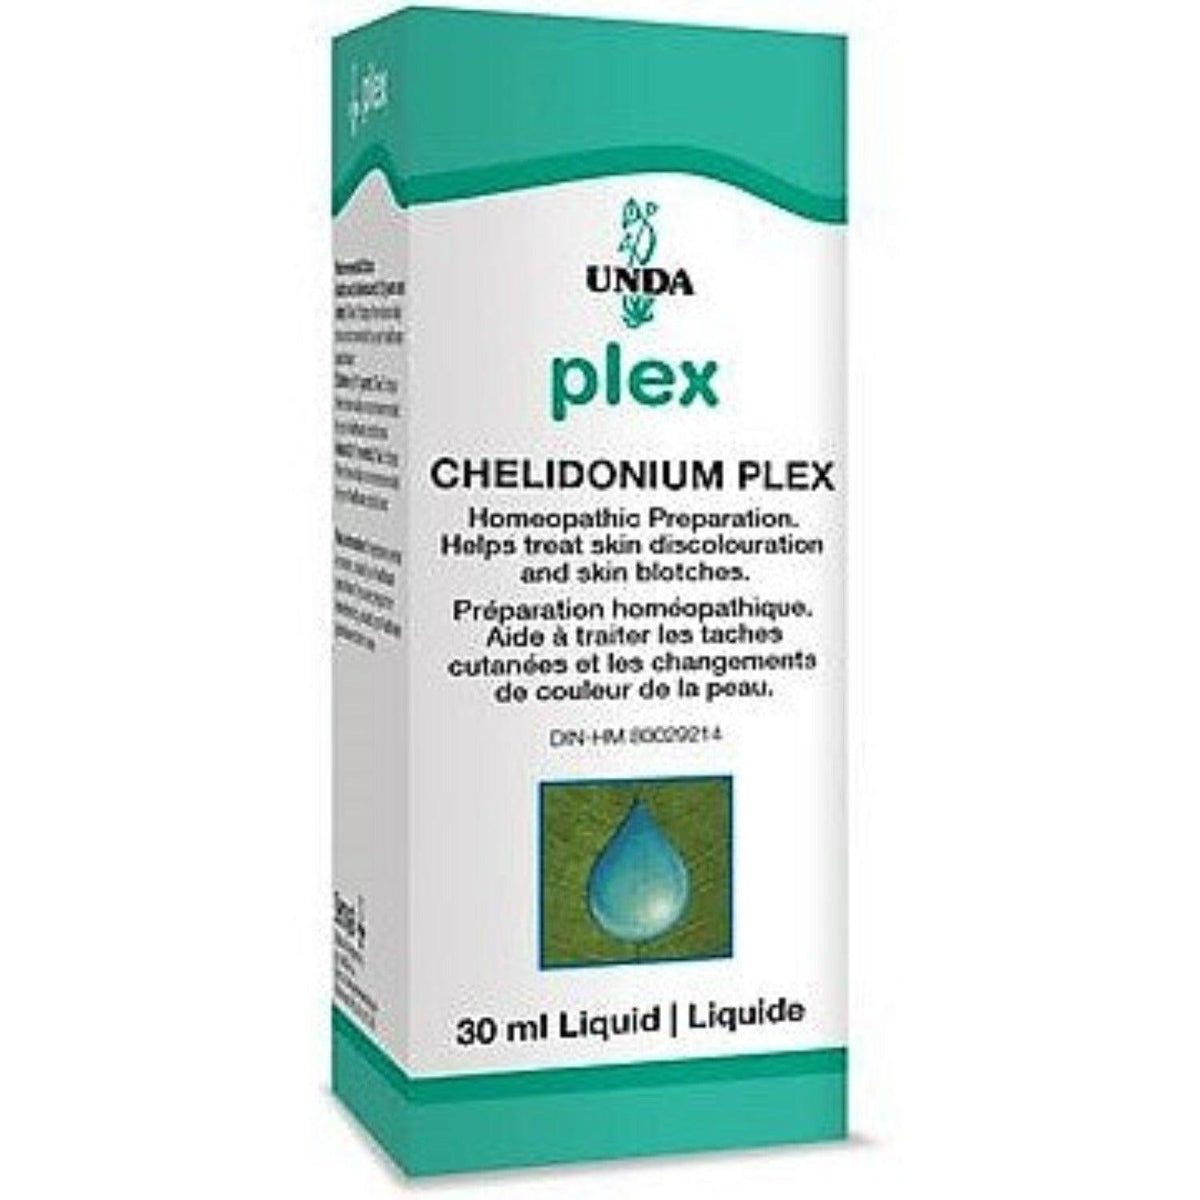 UNDA Plex Chelidonium Plex 30ML Homeopathic at Village Vitamin Store